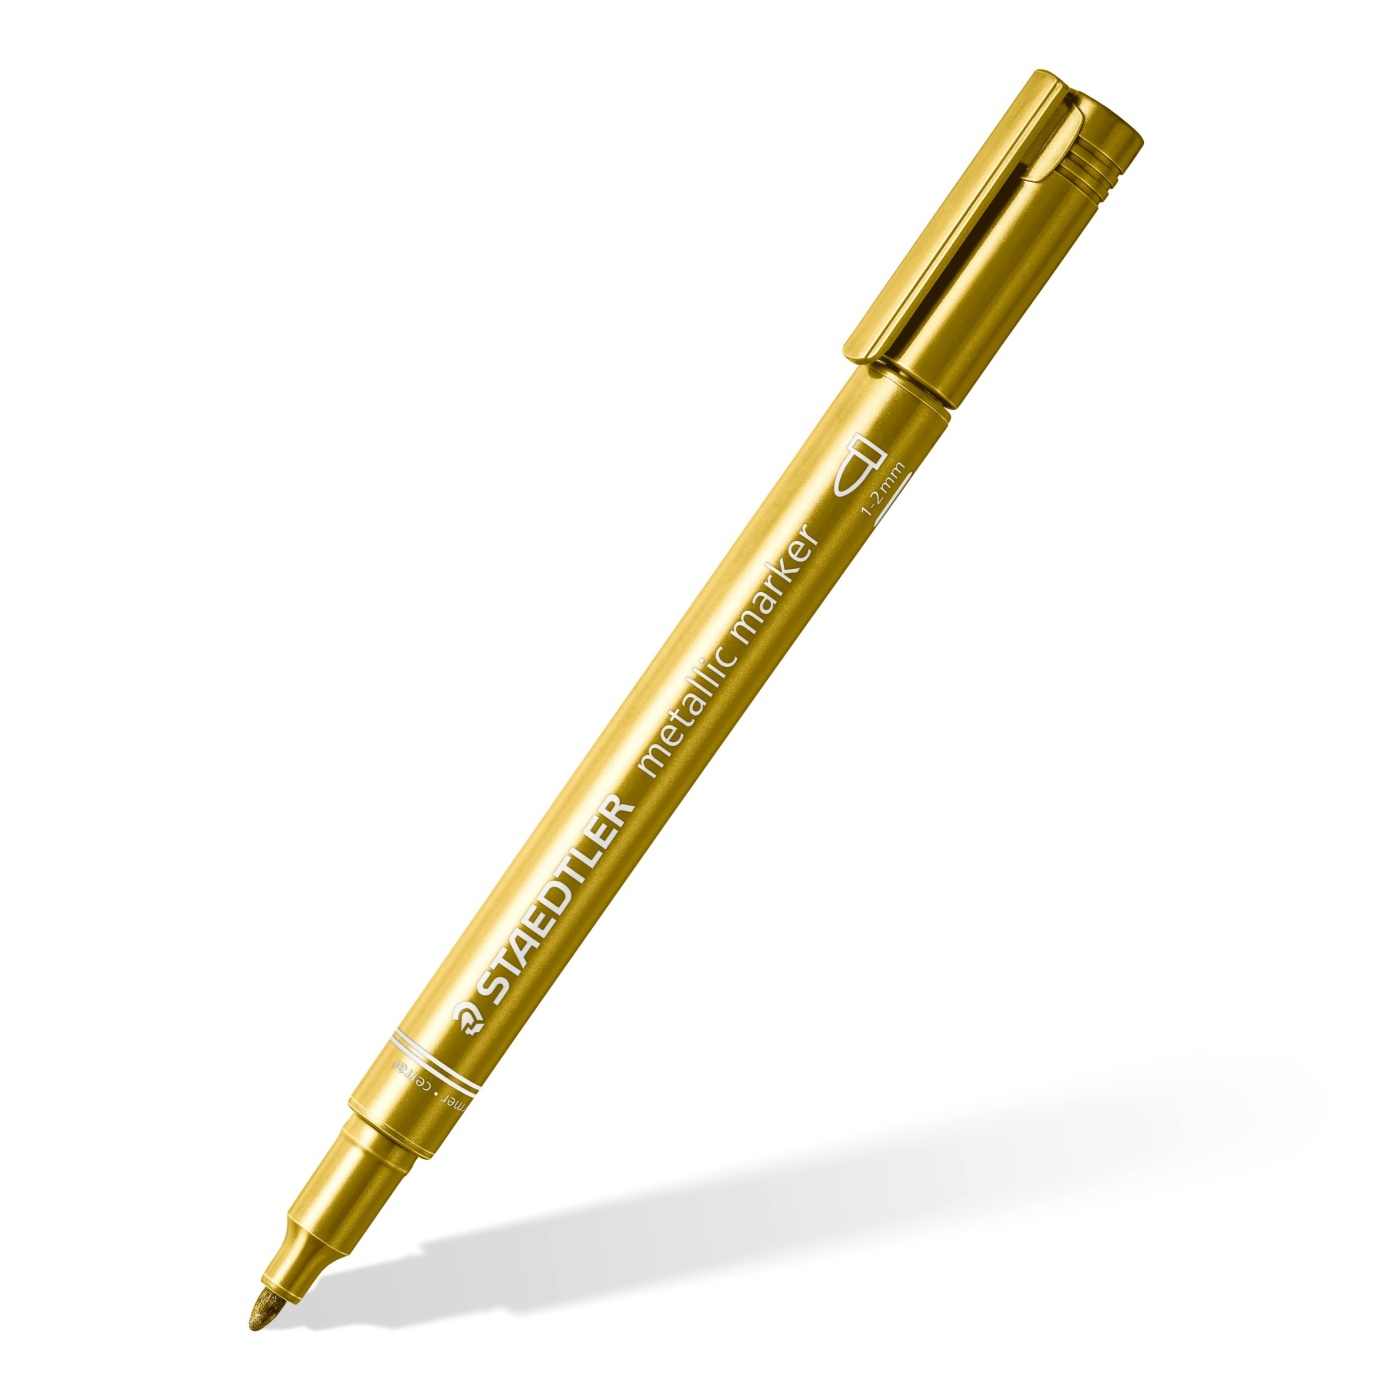  MyLifeUNIT Metallic Marker Pens, 6-Pack Metallic Gold